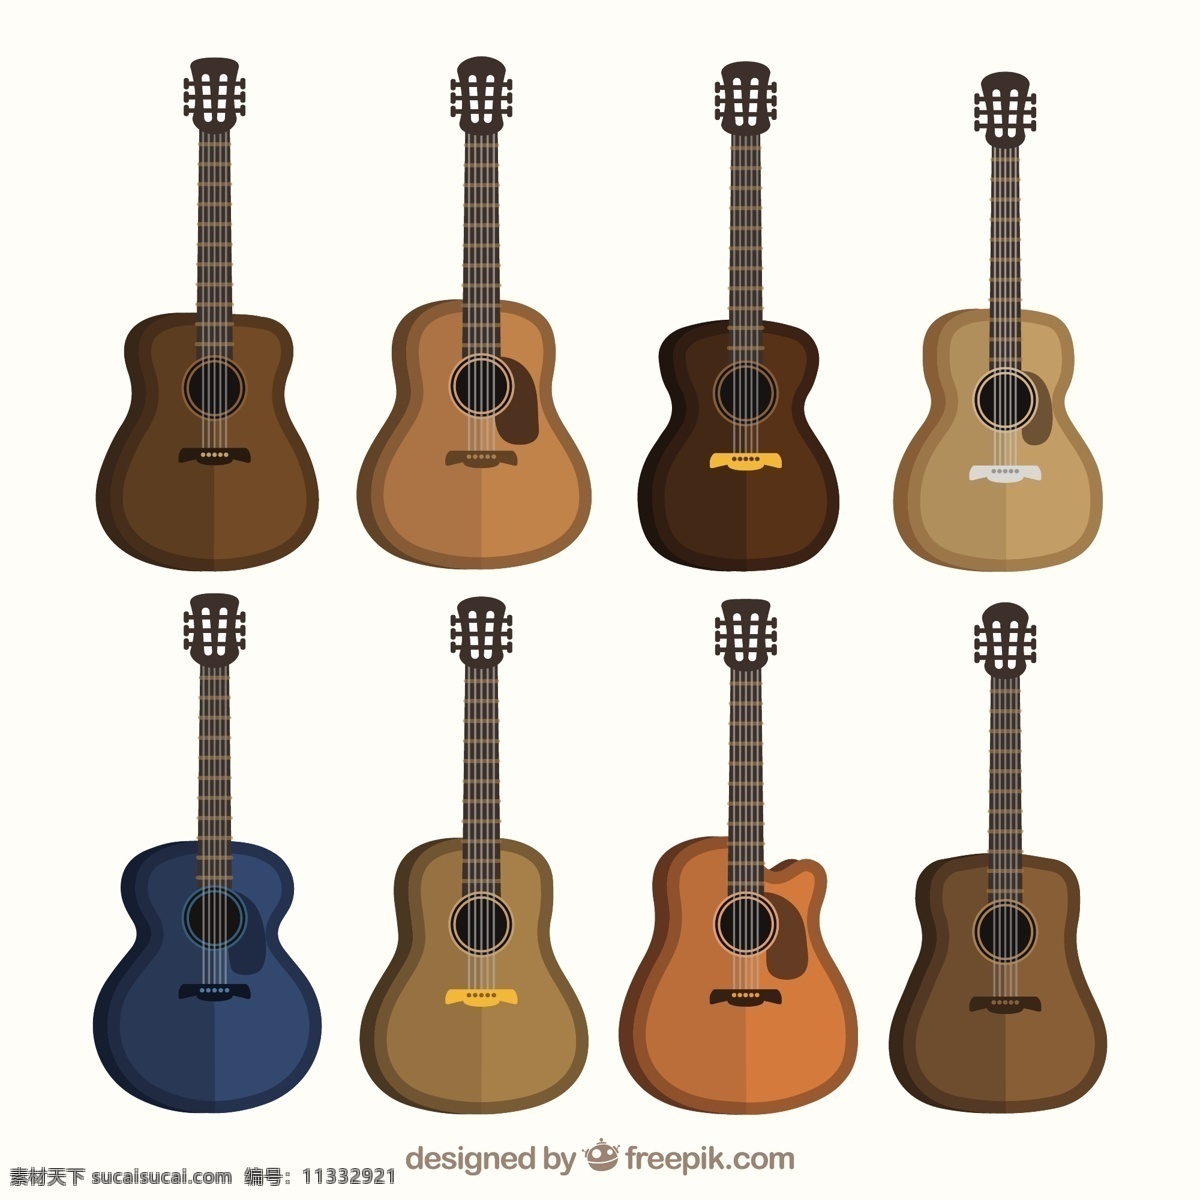 平板 中 声学 吉他 品种 音乐 色彩 平面设计 声音 音乐会 演奏 乐器 歌曲 设备 旋律 多样性